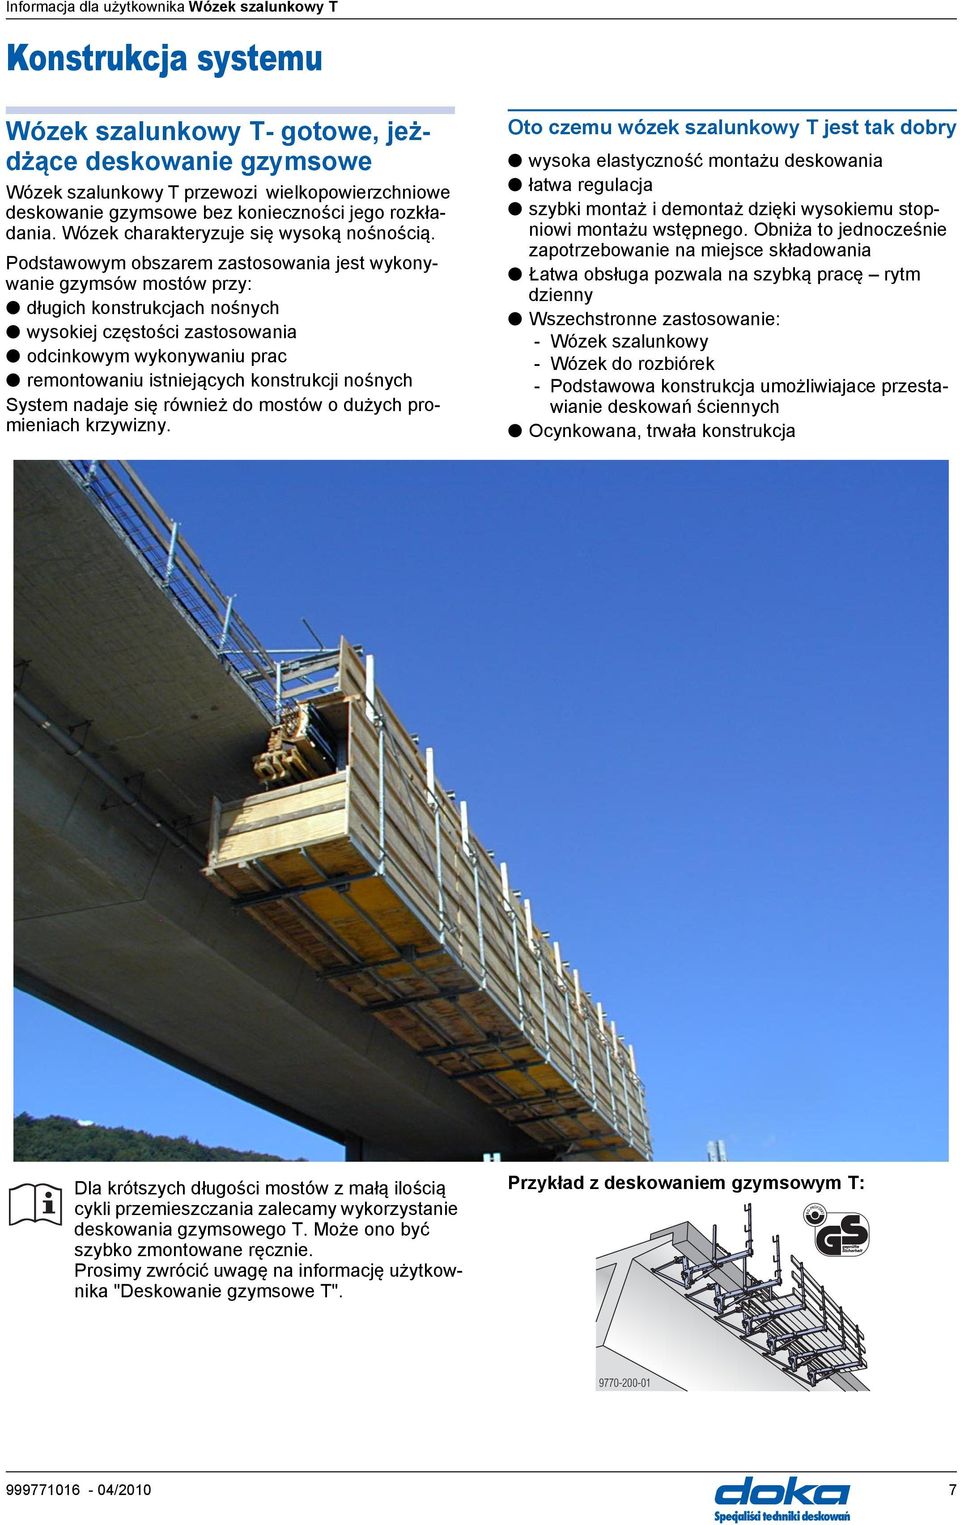 Podstawowym obszarem zastosowania jest wykonywanie gzymsów mostów przy: długich konstrukcjach nośnych wysokiej częstości zastosowania odcinkowym wykonywaniu prac remontowaniu istniejących konstrukcji